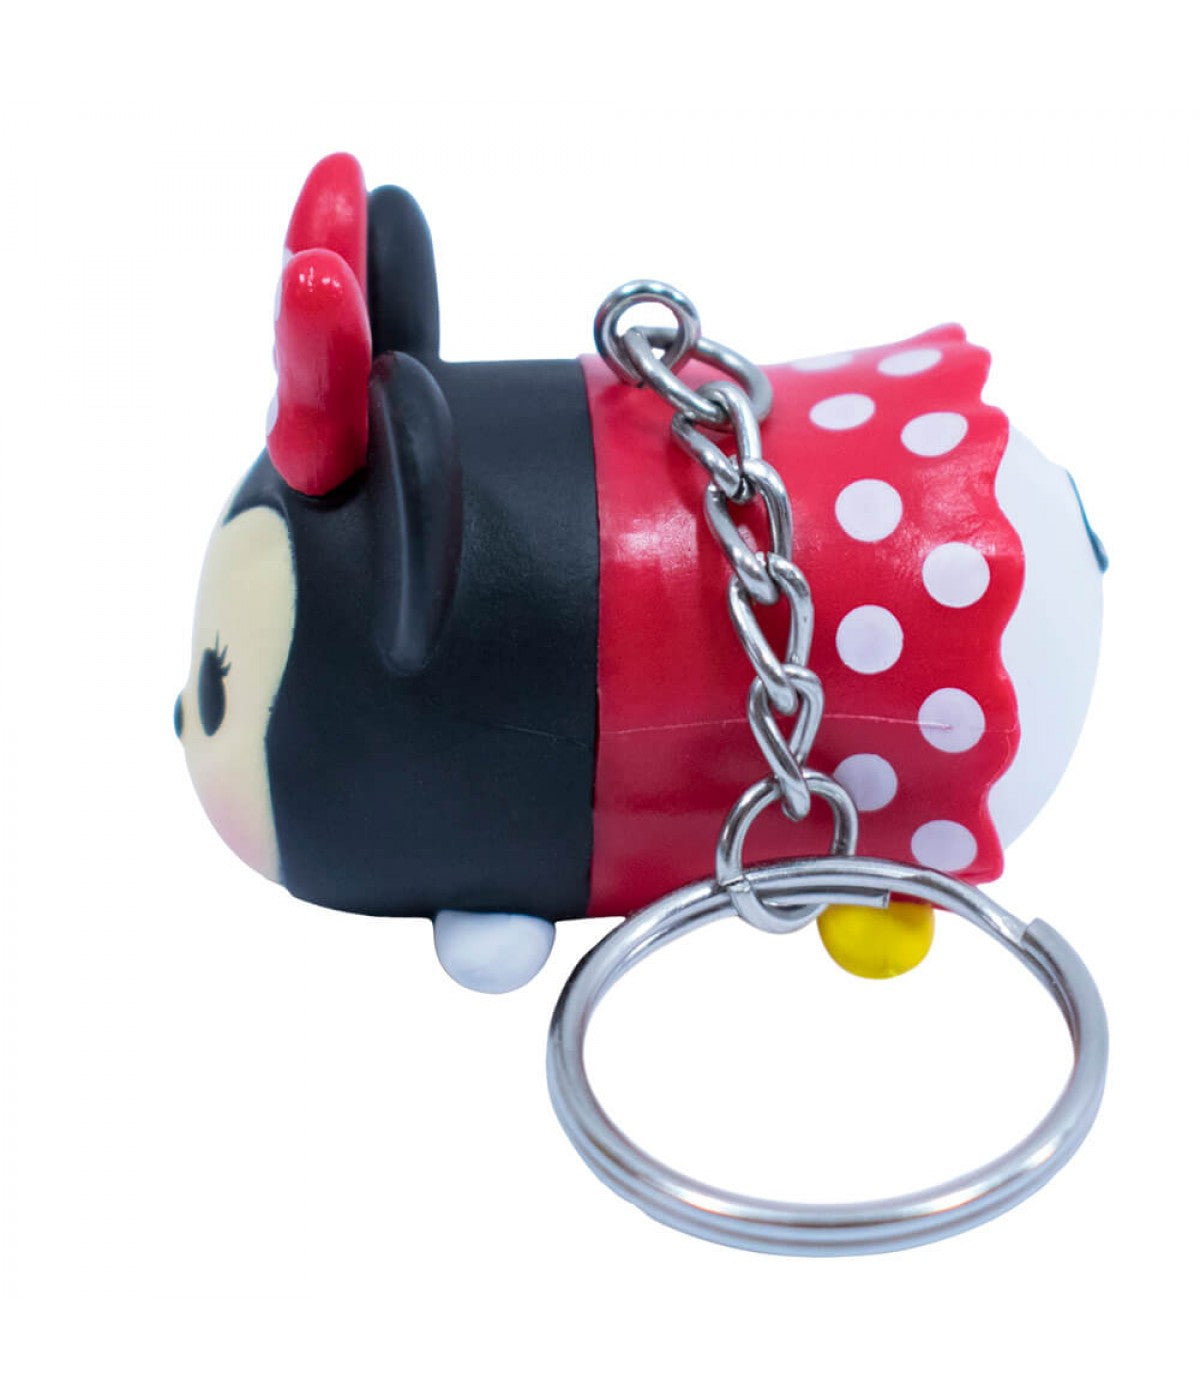 Chaveiro 3D Tsum Tsum Minnie Mouse